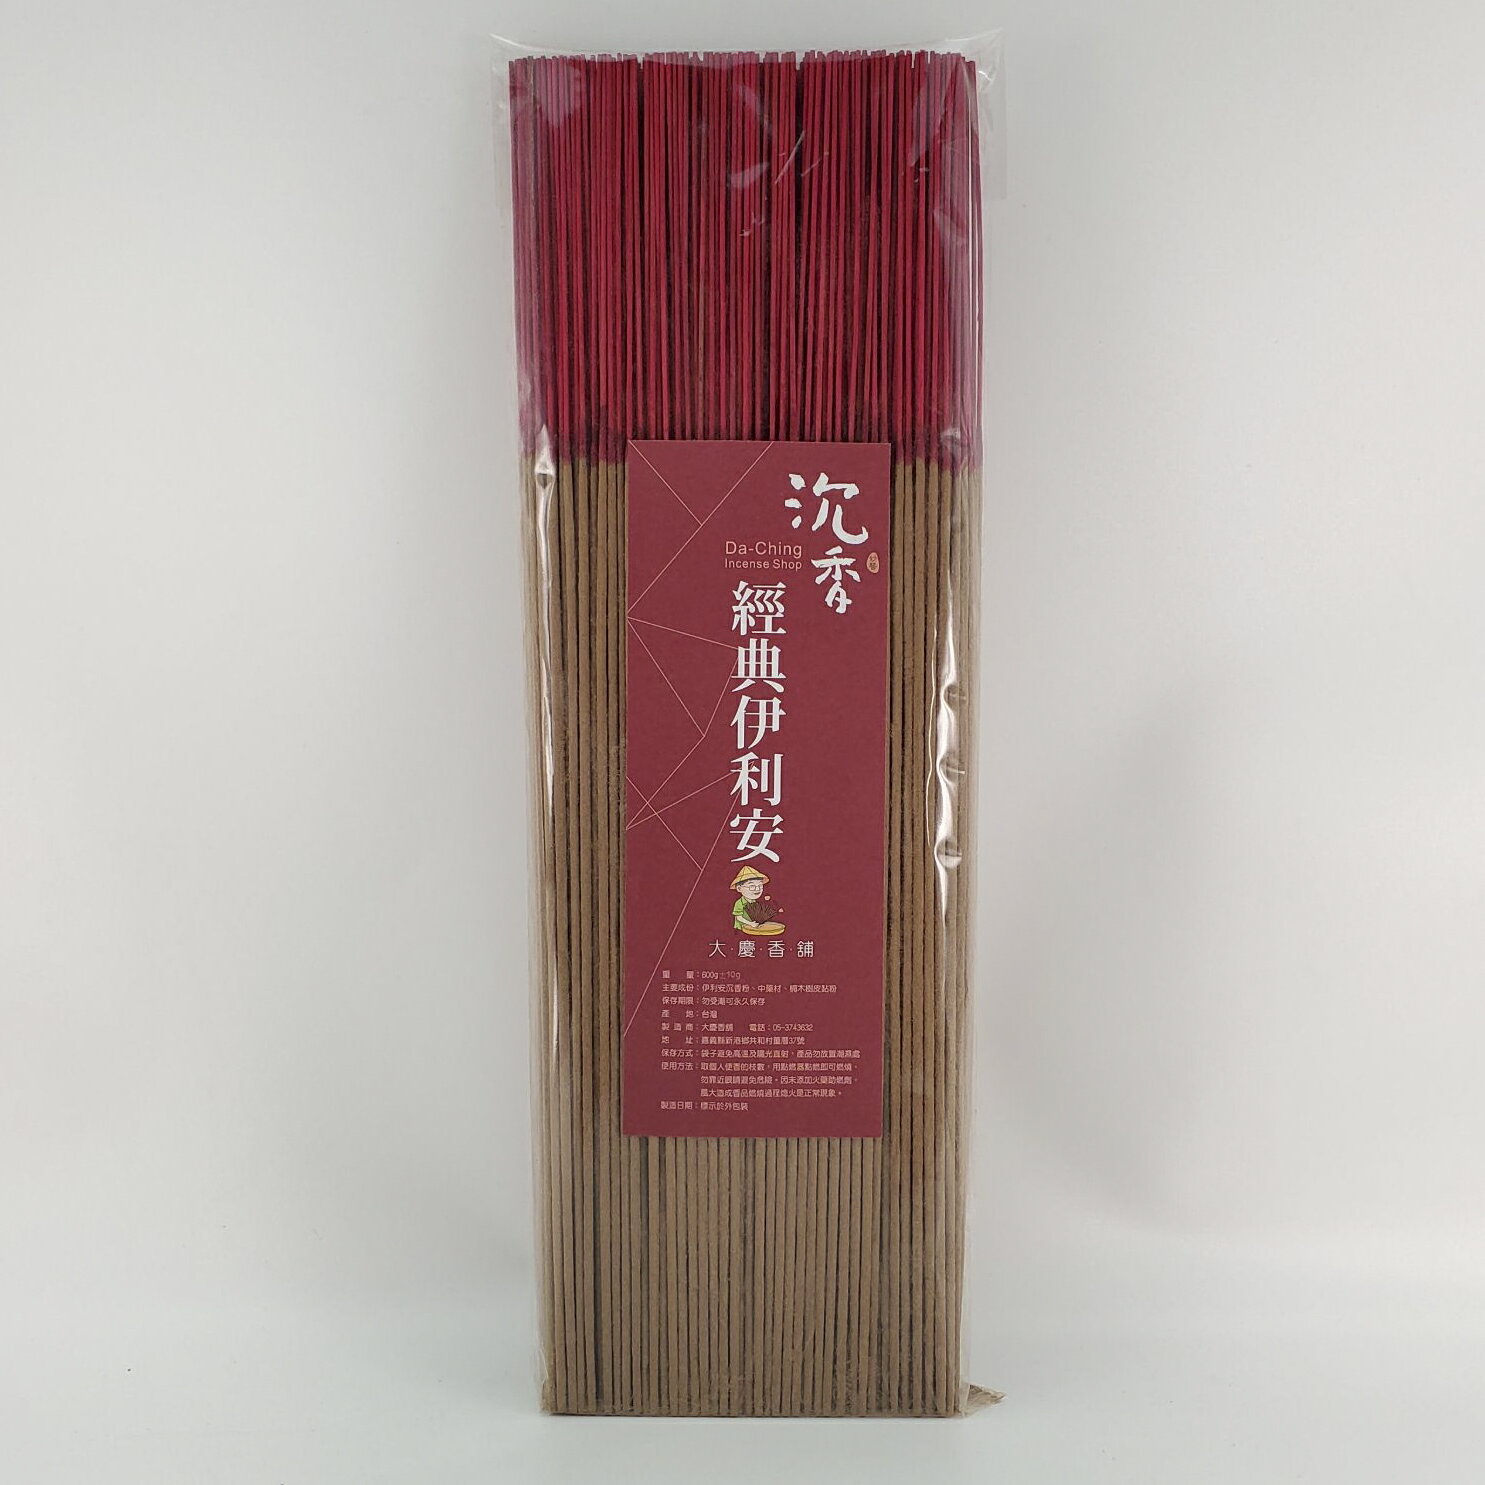 立香 沉香類 經典伊利安香 (一尺三)台灣製造 天然 安全 環保